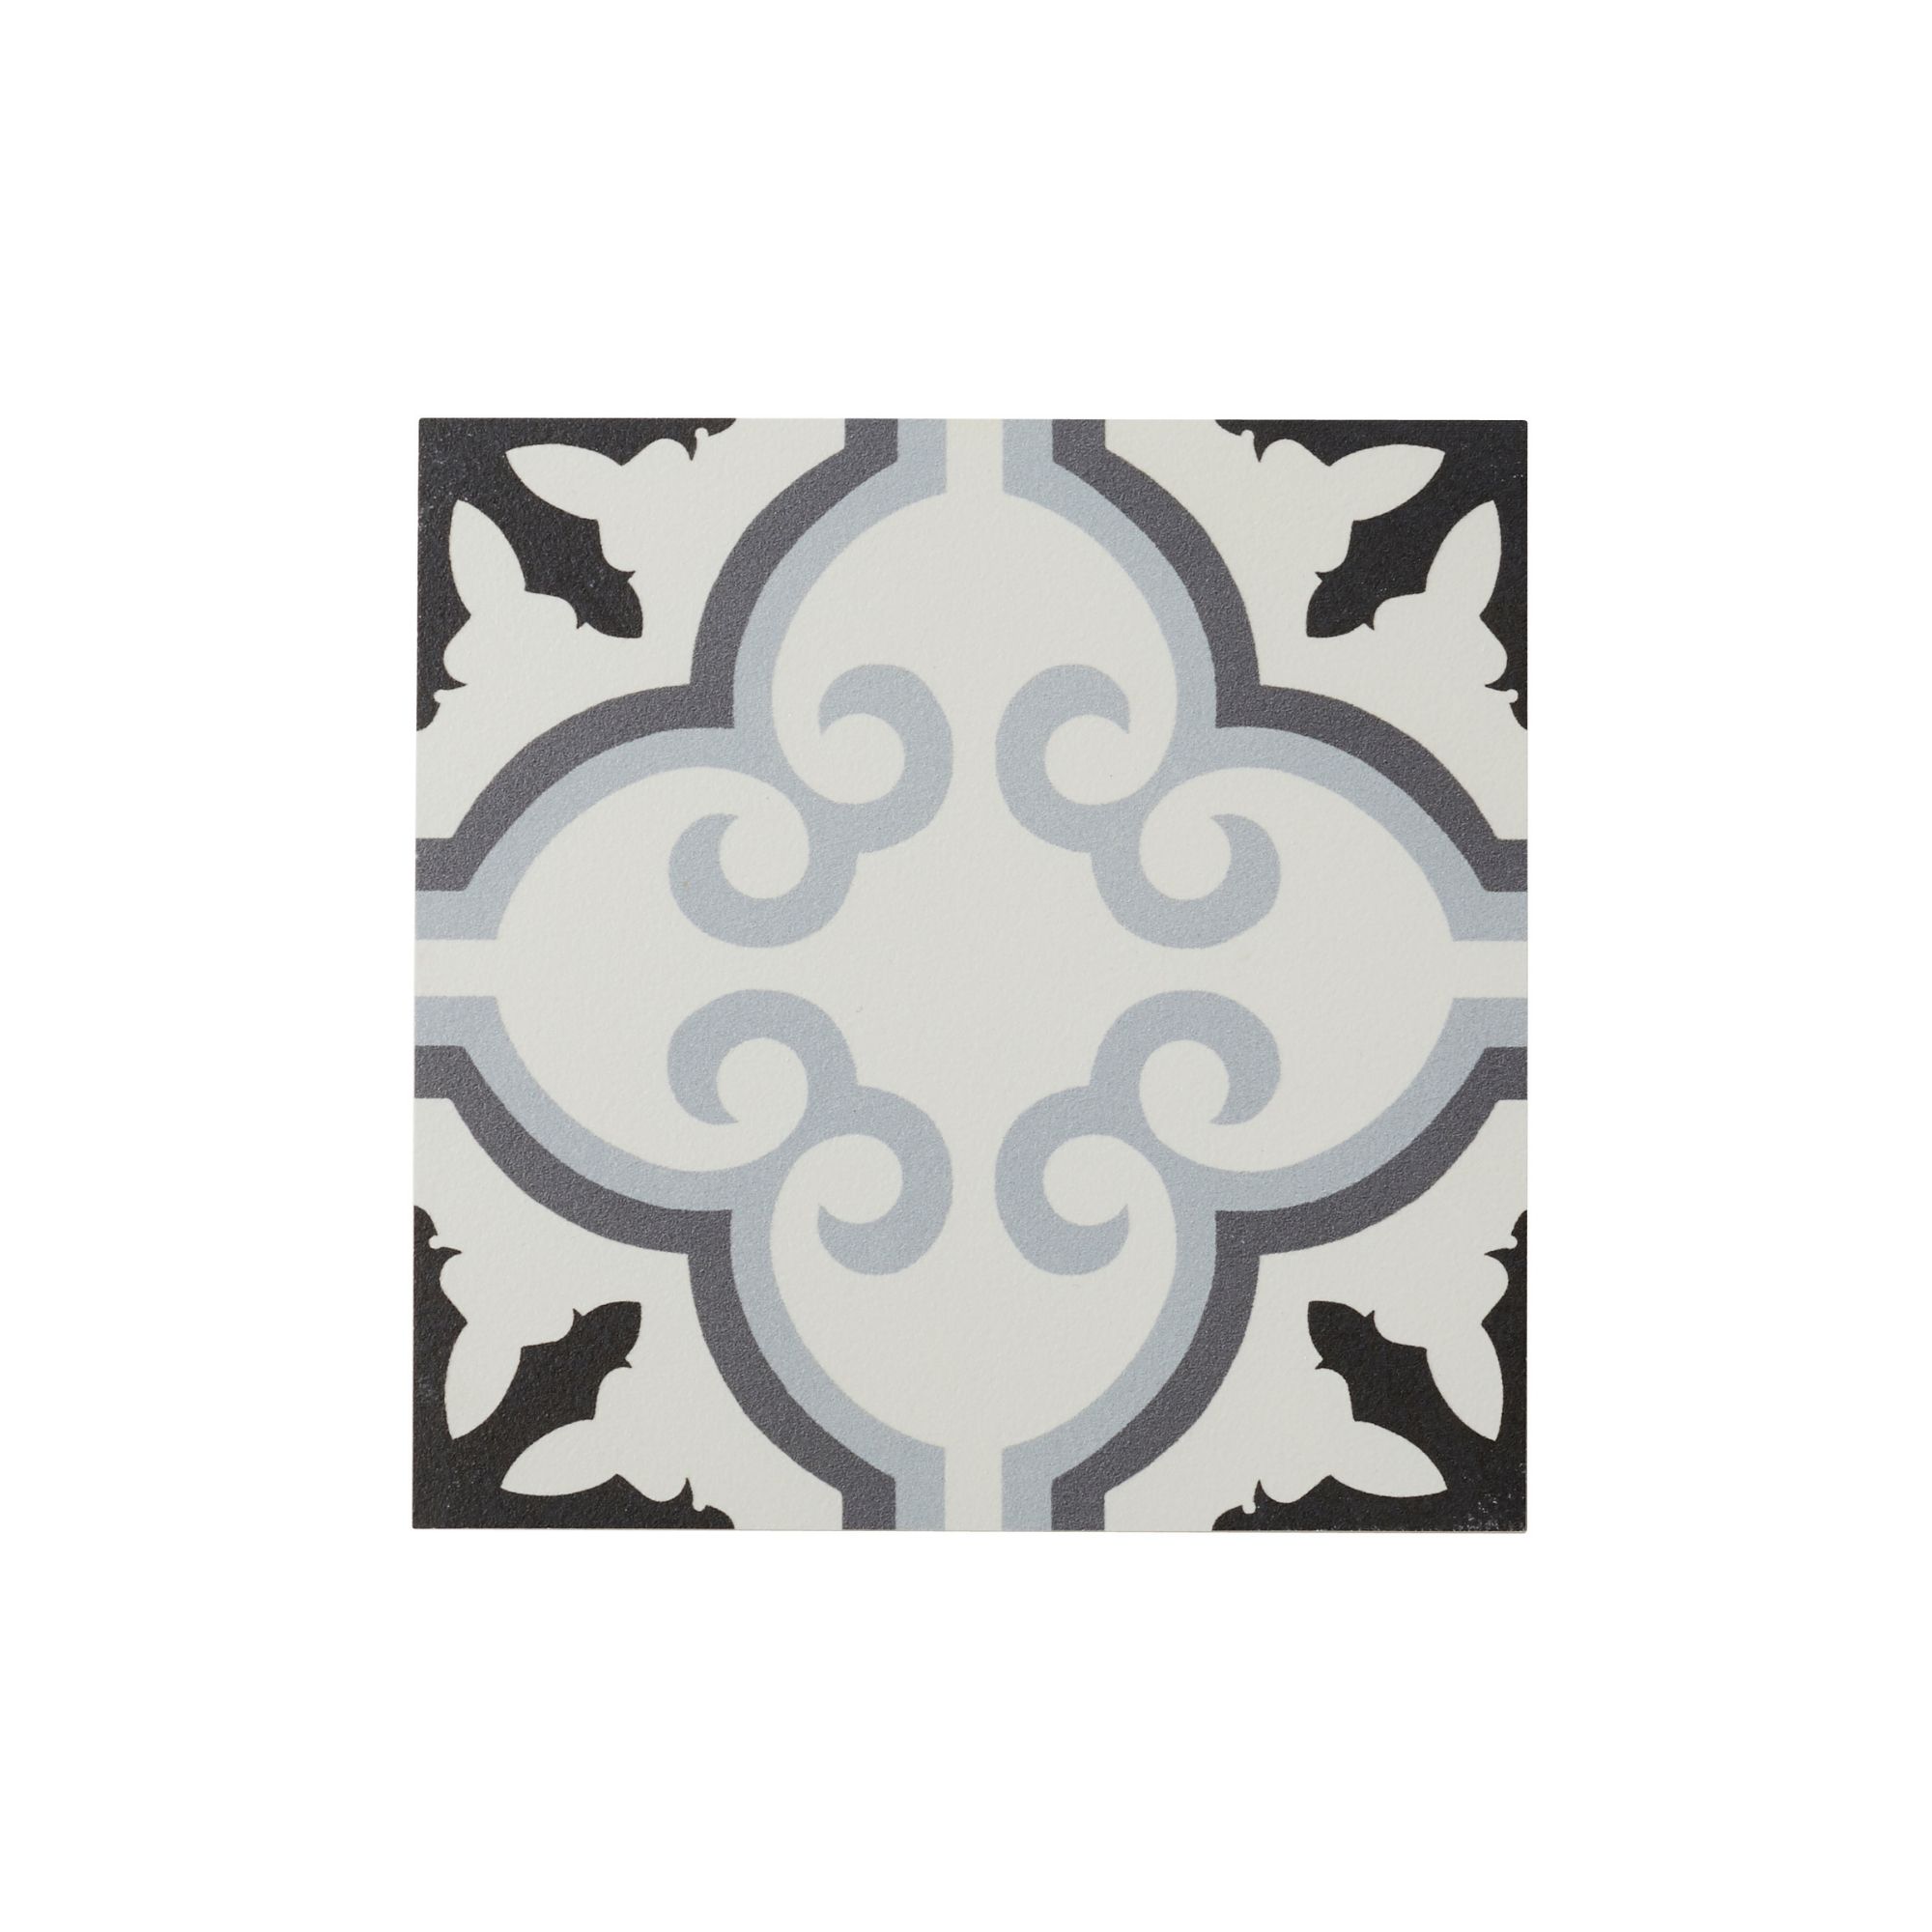 Hydrolic Black & white Matt Flower Porcelain Wall & floor Tile, Pack of 25, (L)200mm (W)200mm